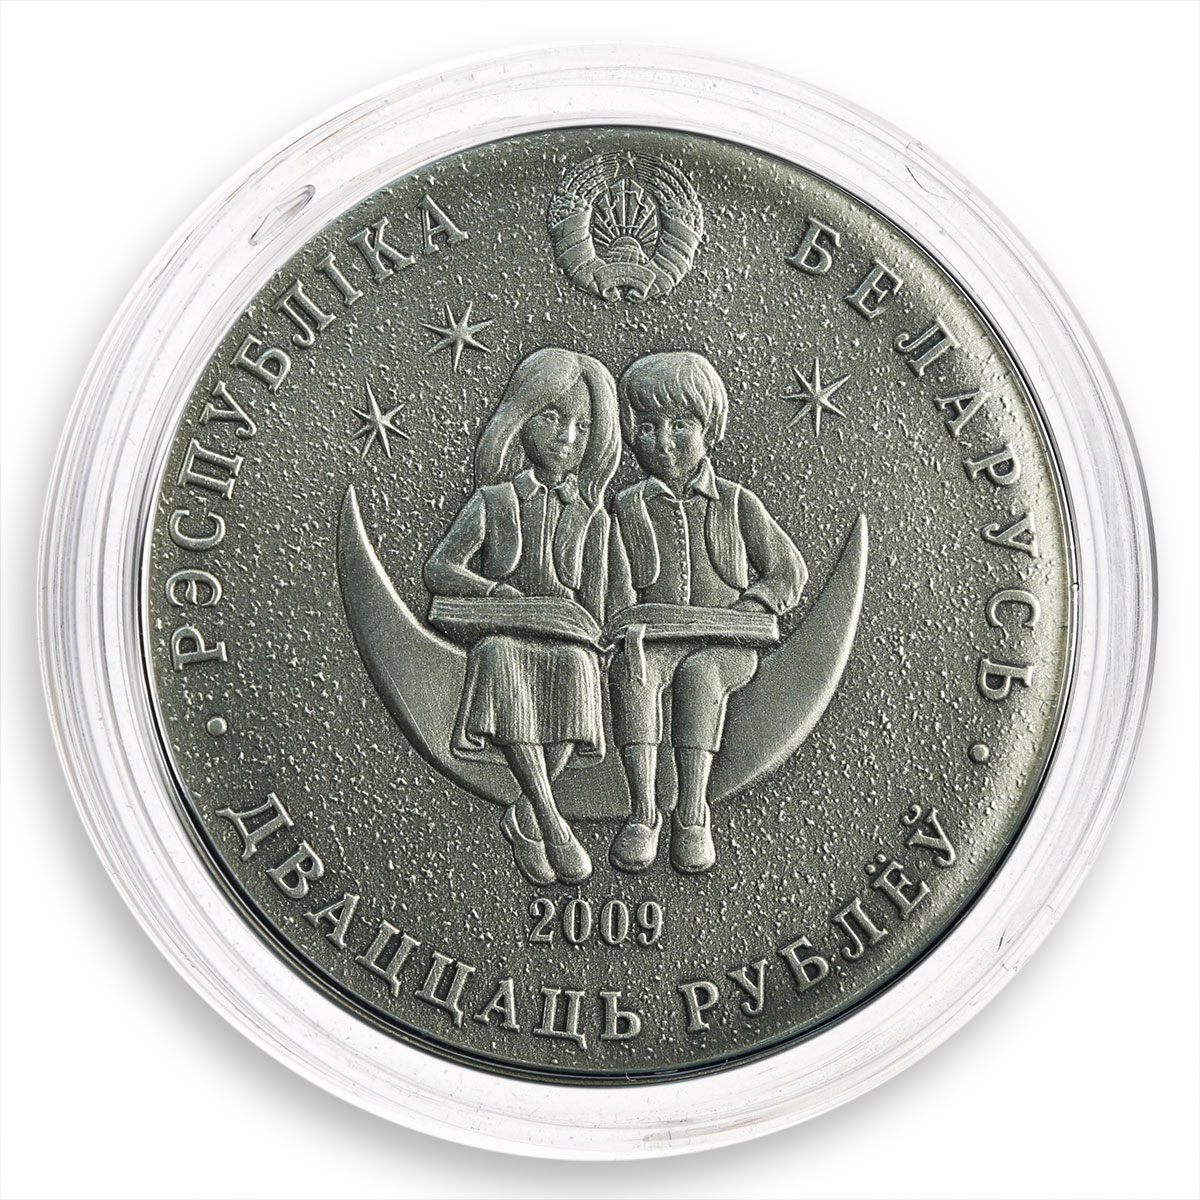 Belarus 20 rubles Nutcracker Series Fairy Tales Silver Coin Blue Zircon 2009